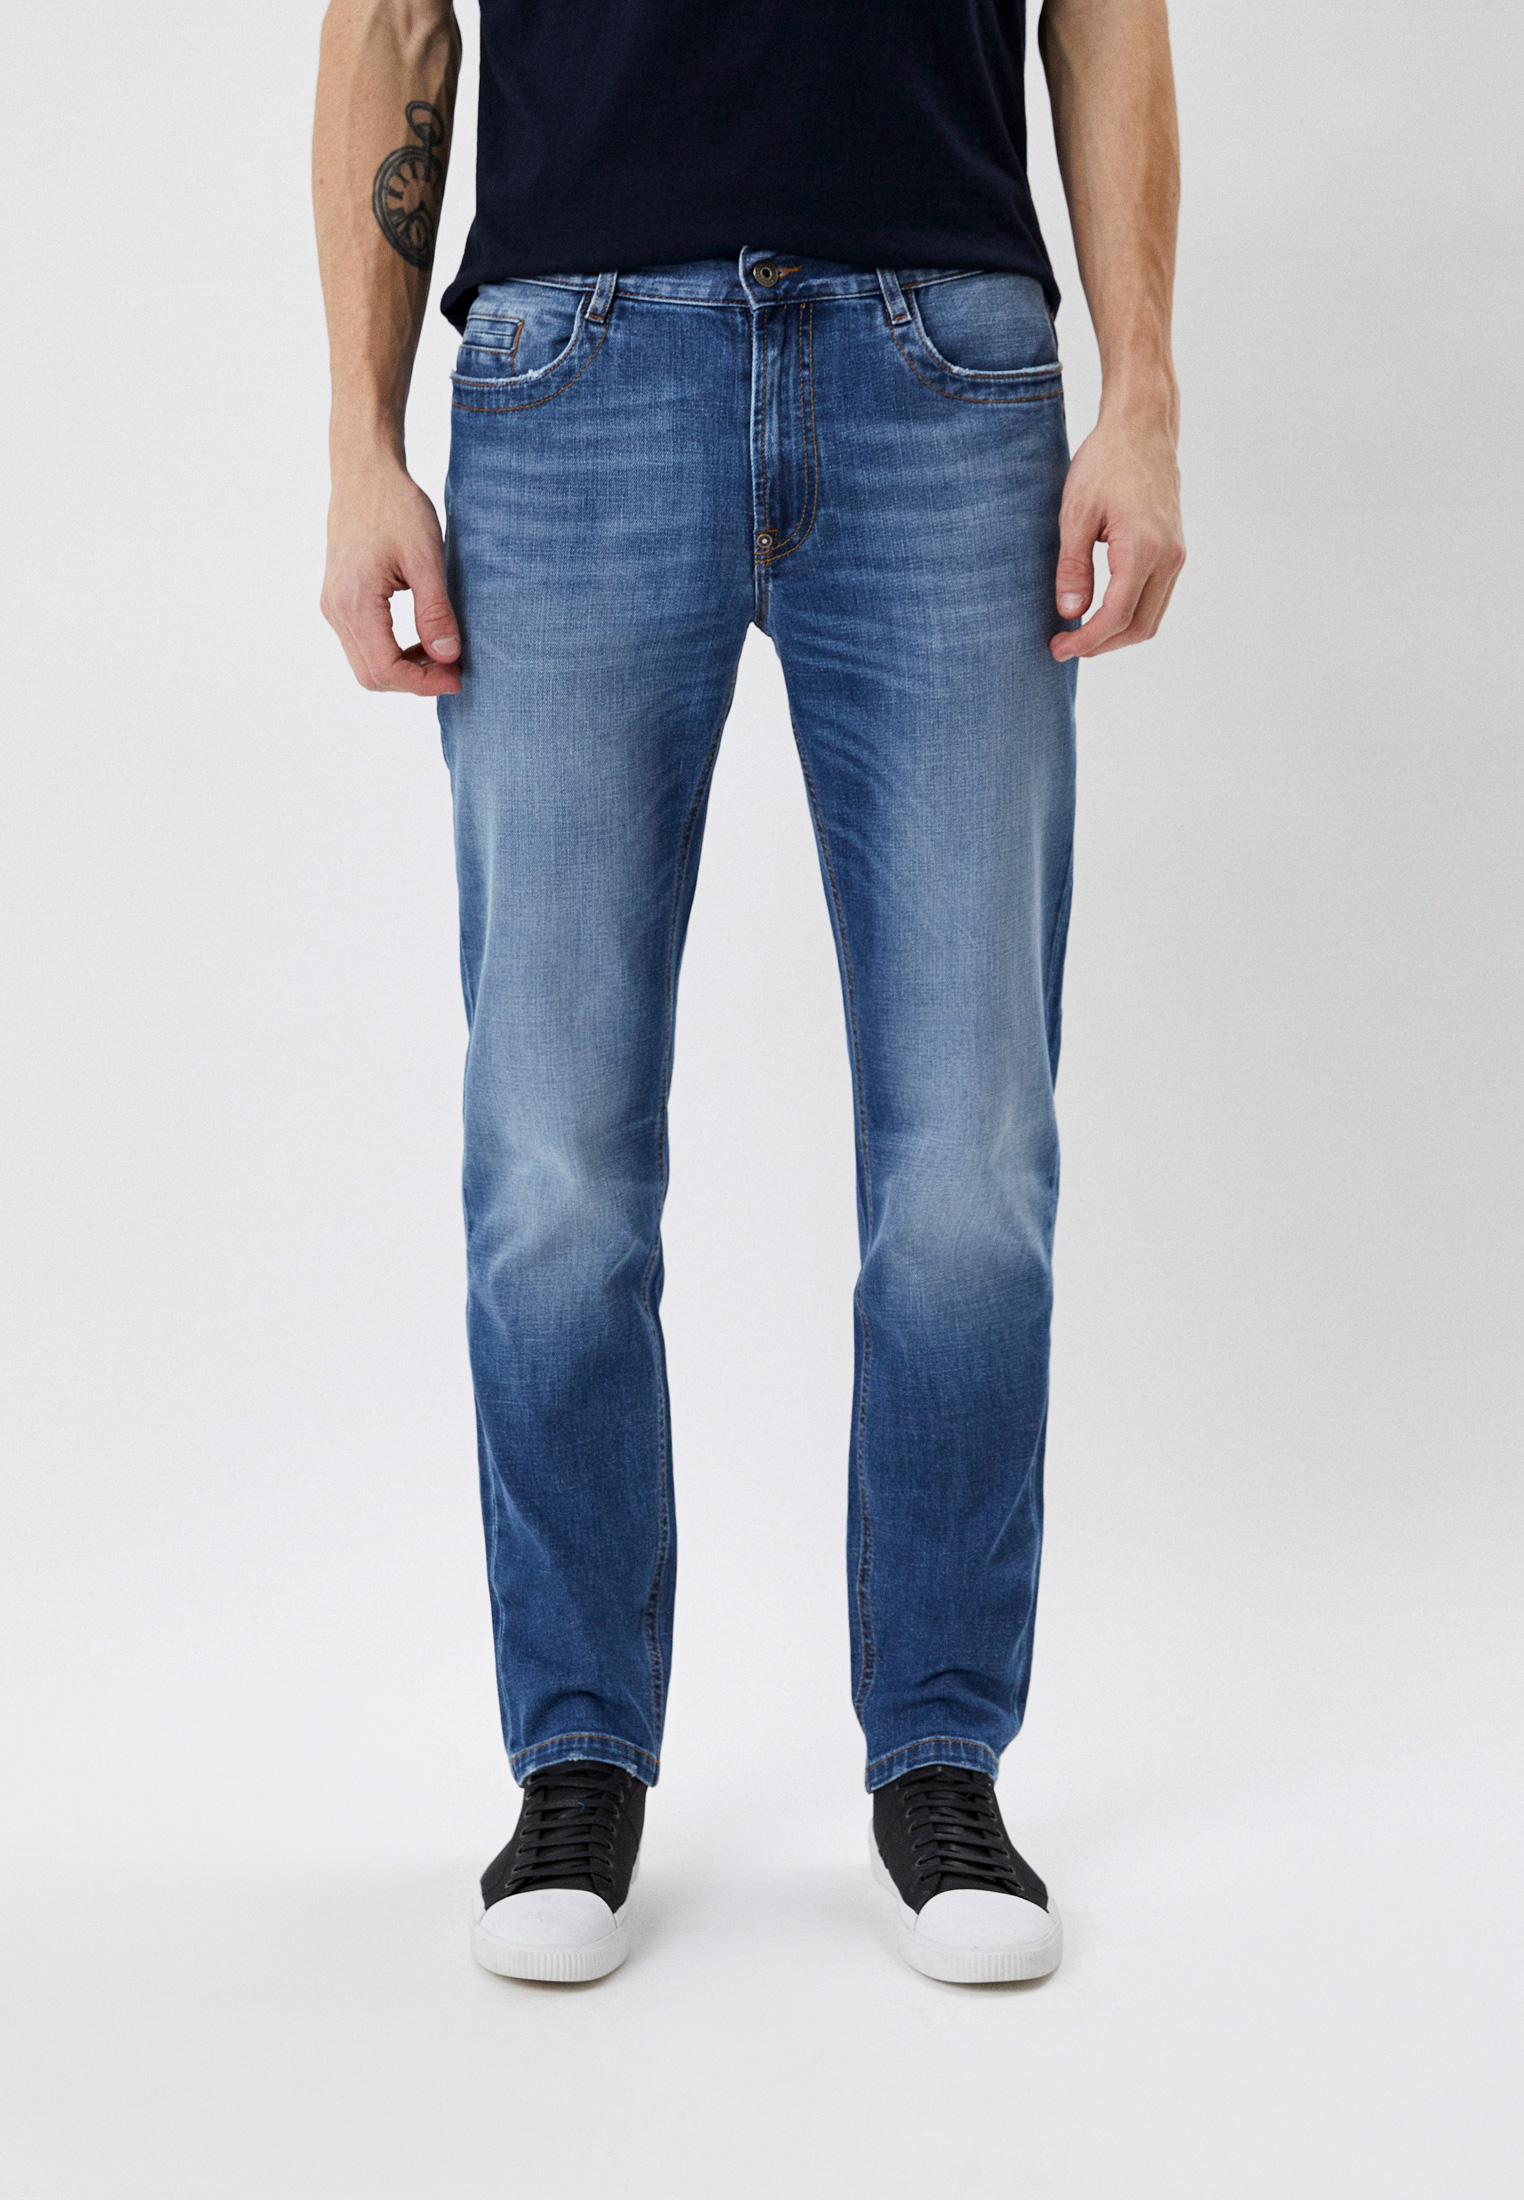 Мужские прямые джинсы Bikkembergs (Биккембергс) CQ10203S3393: изображение 5